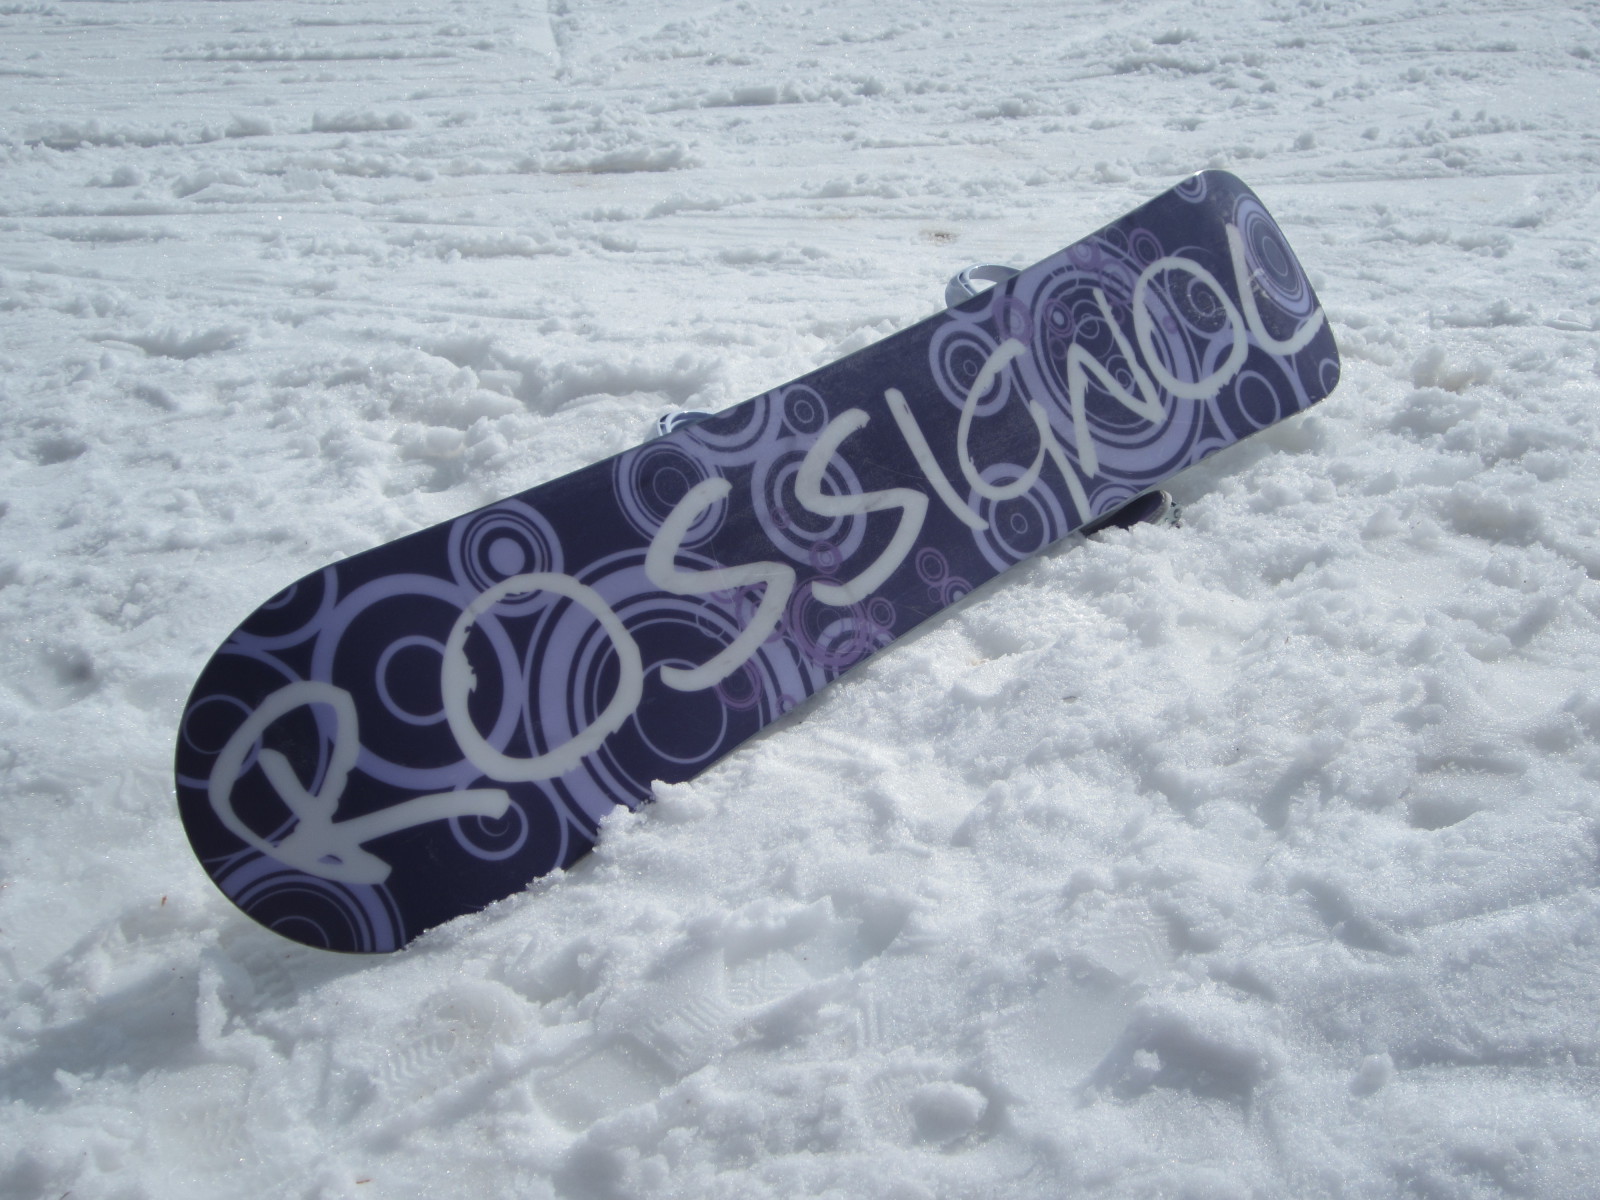 Rossignol snowboard